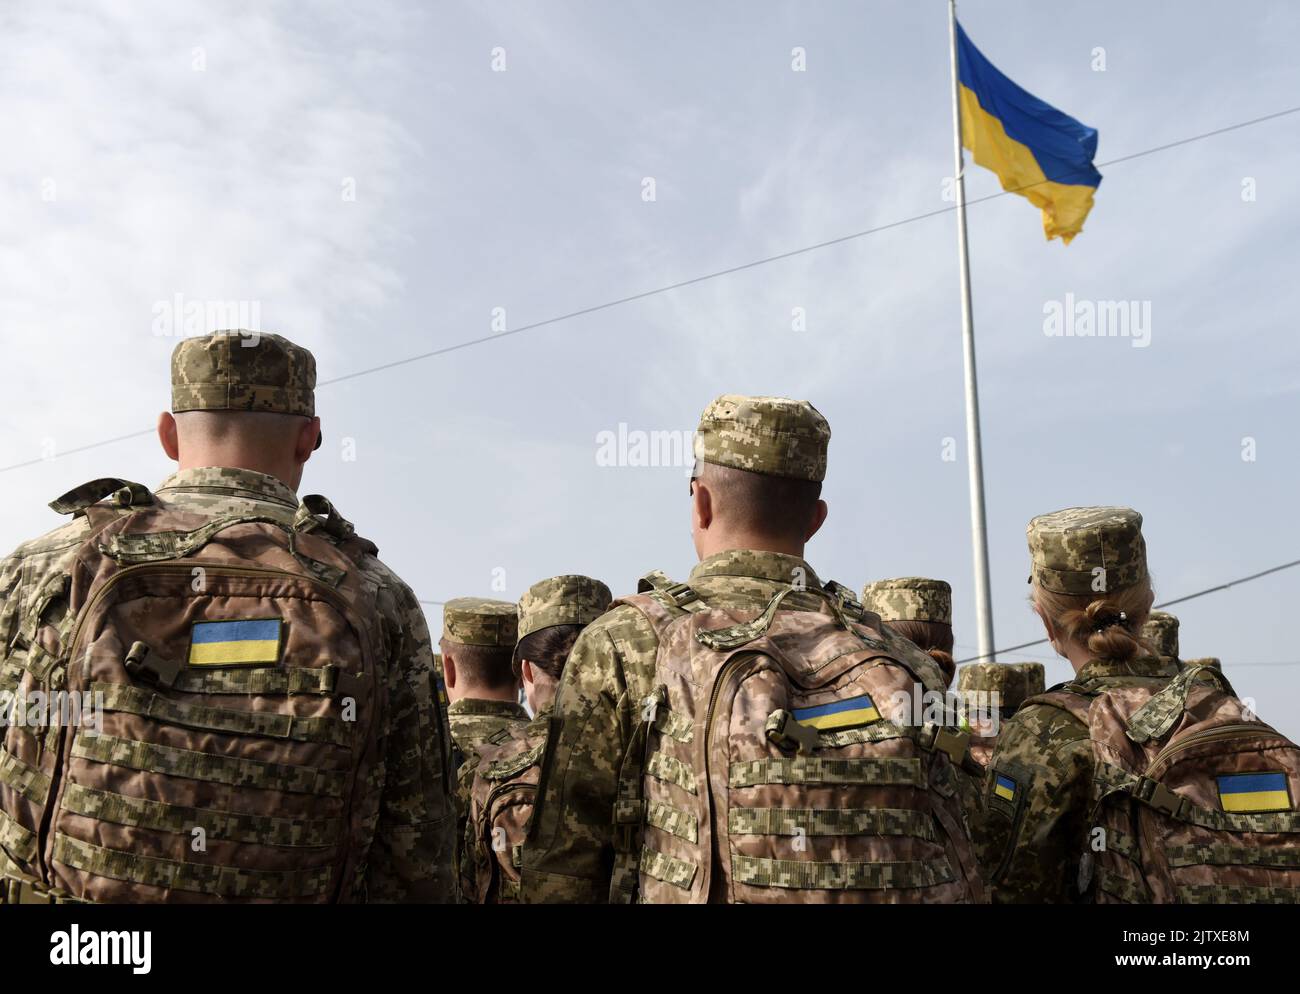 Forces armées de l'Ukraine. Soldat ukrainien. Ukrainien dans l'armée. Drapeau ukrainien sur l'uniforme militaire. Banque D'Images